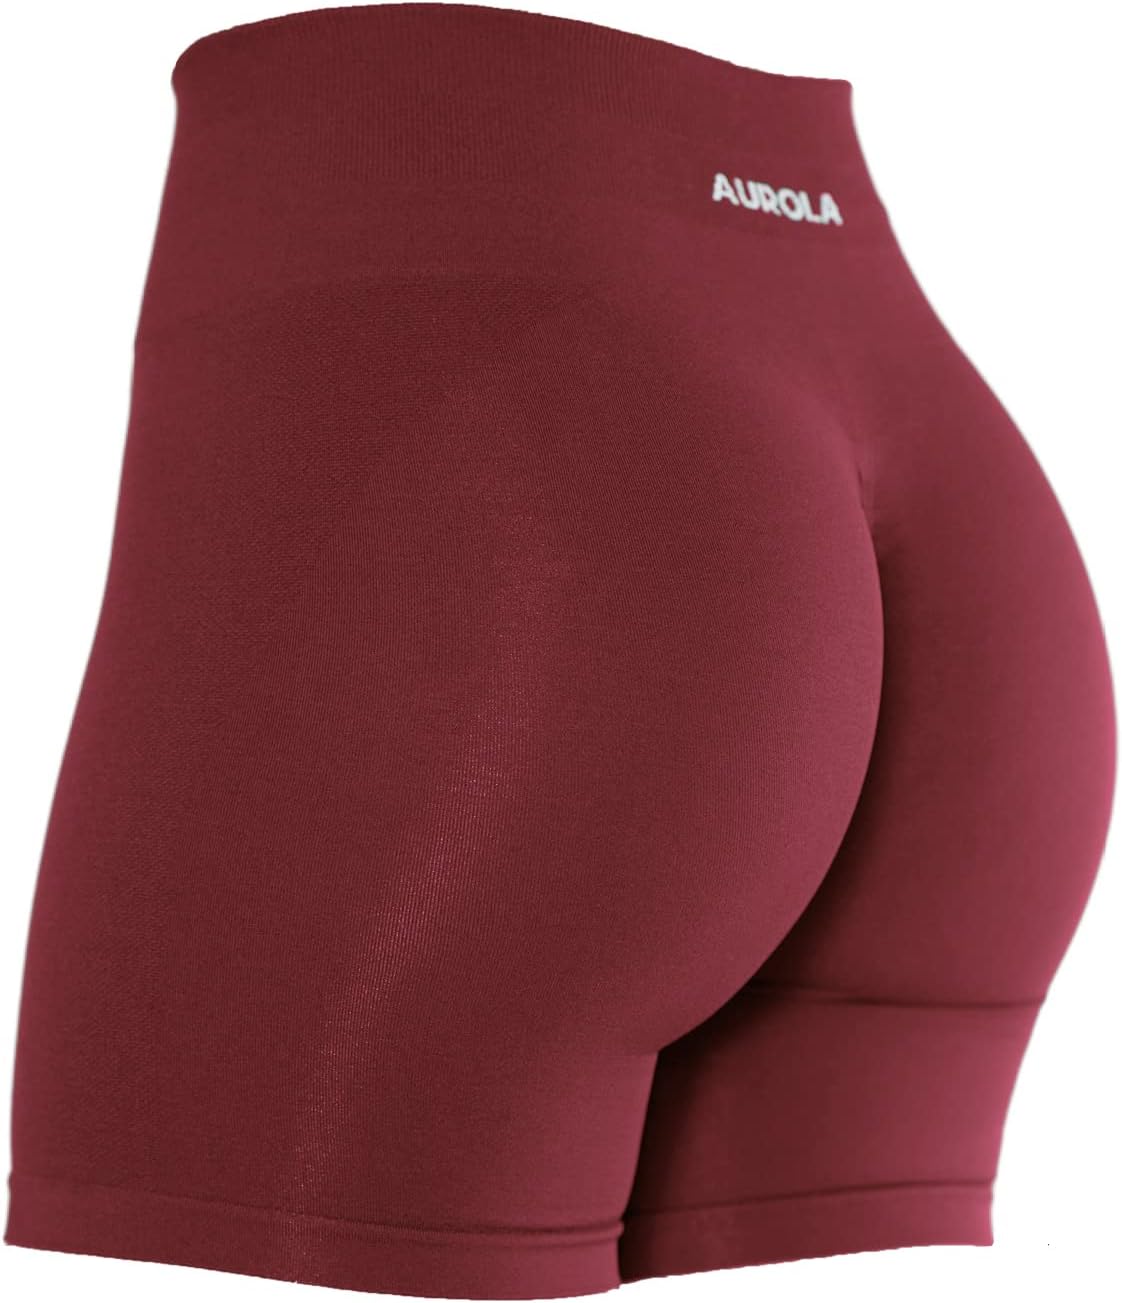 AUROLA Intensify Workout Shorts for Women Seamless Scrunch Short